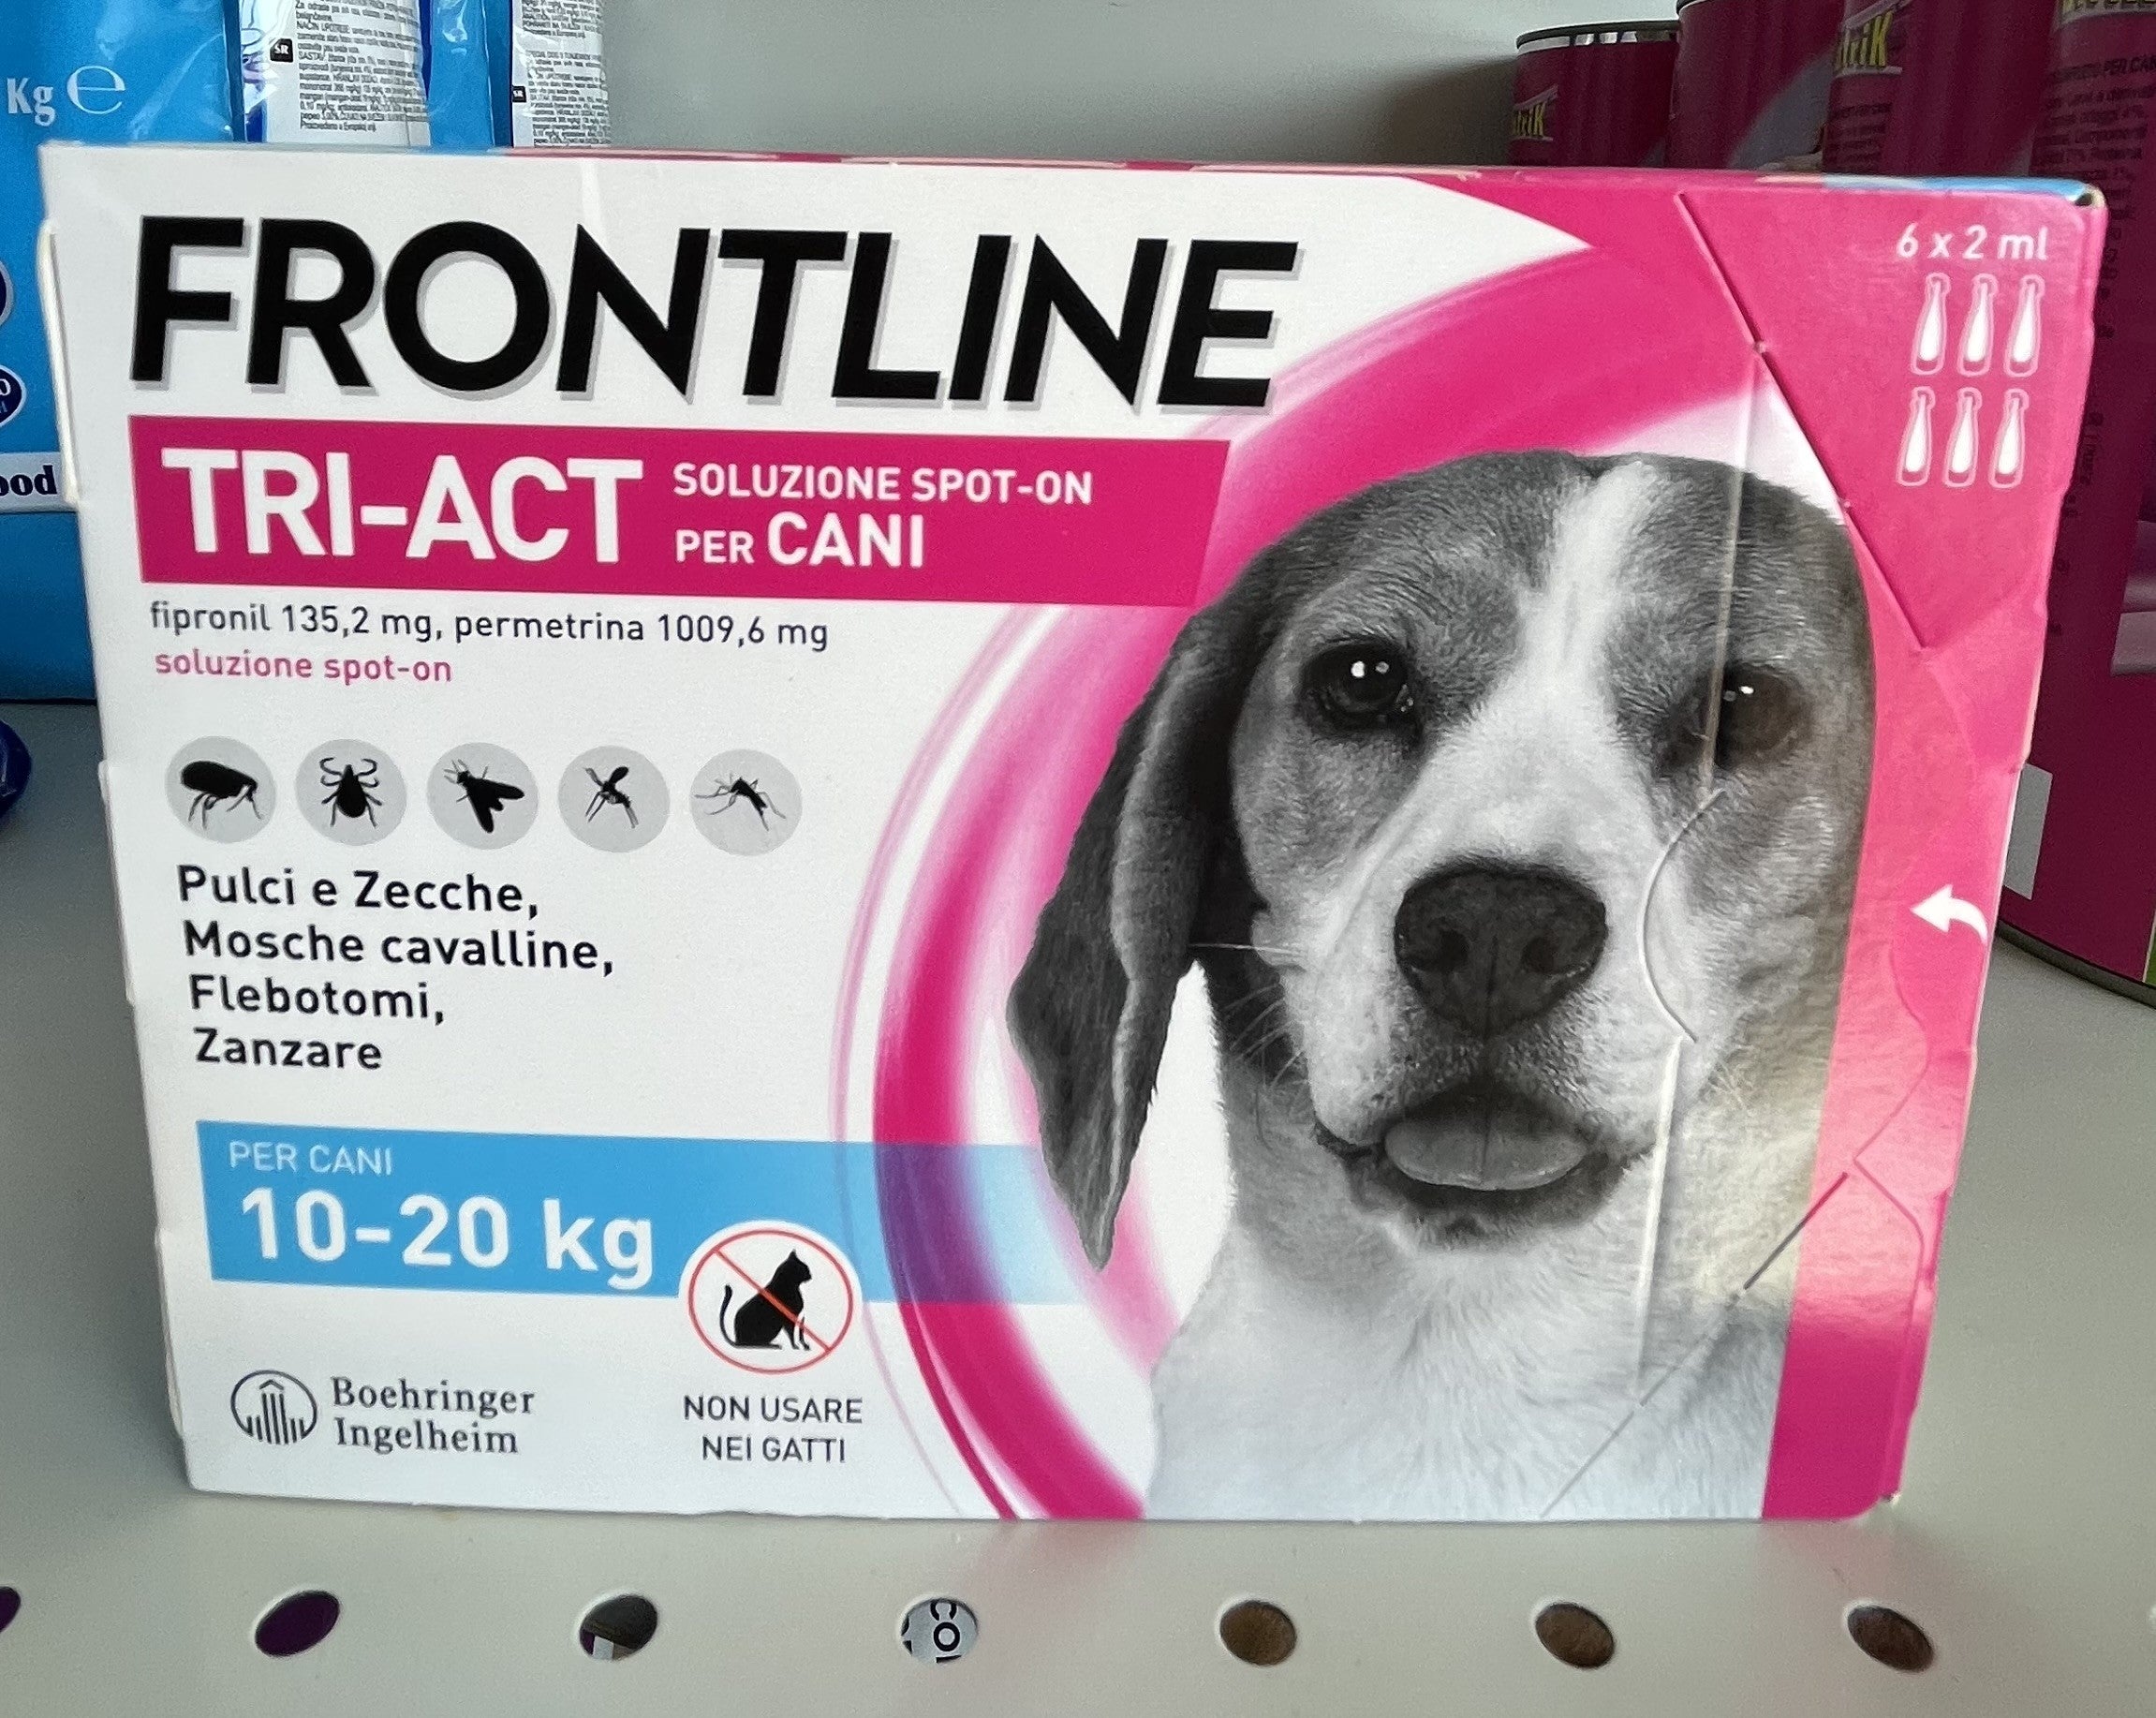 Pets - Frontline - TRI - ACT - Soluzione - Spot - On - Cani - da 10 a 20 Kg - Antiparassitario - 6x2